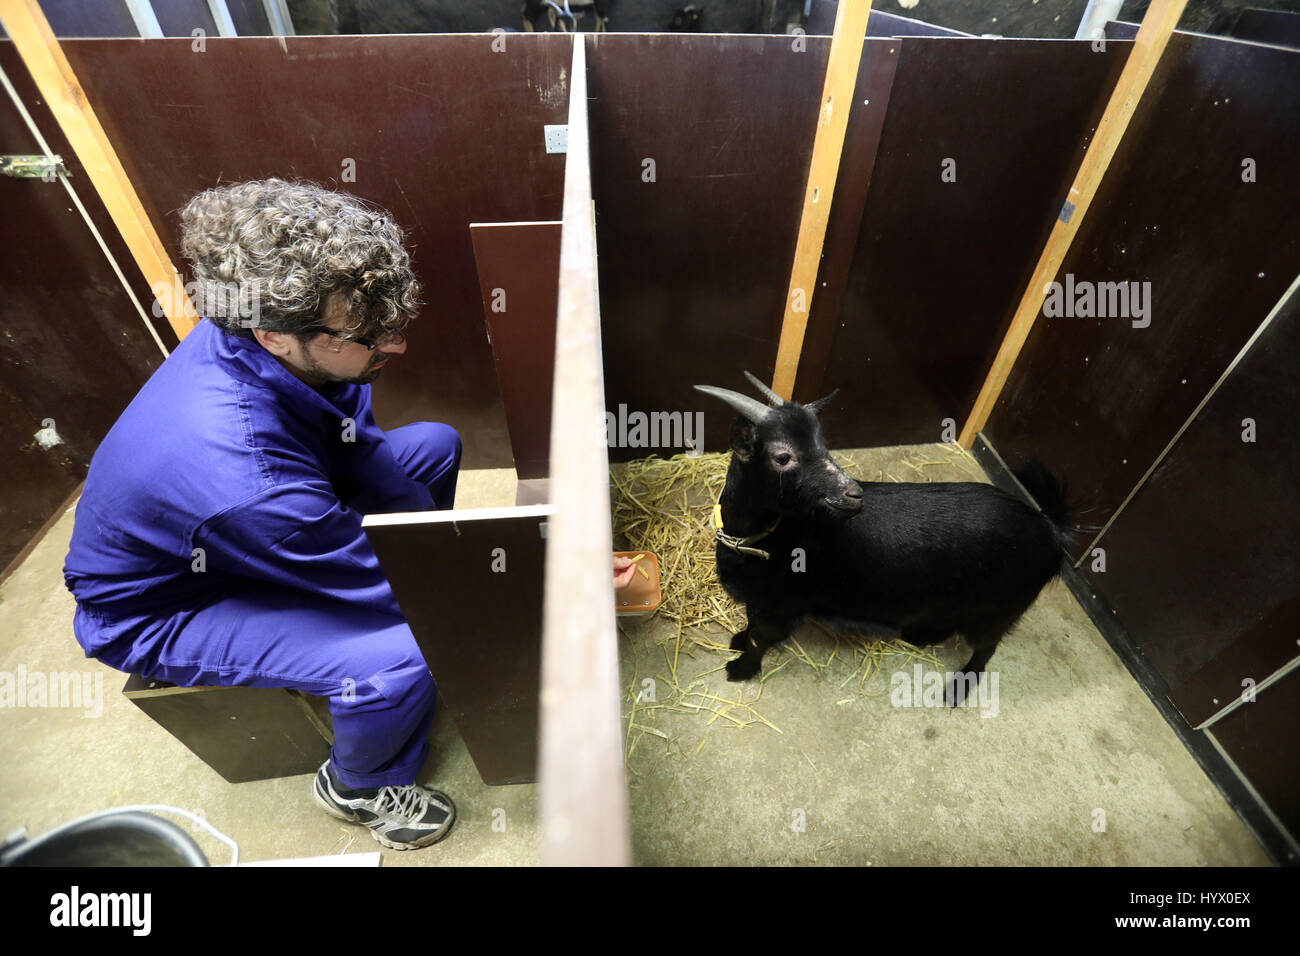 Dummerstorf, Alemania. 7 abr, 2017. Christian Nawroth trabaja con una cabra en el Instituto Leibniz para ganadería biología (FBN) en Dummerstorf, Alemania, el 7 de abril de 2017. Los científicos quieren investigar la capacidad de aprendizaje de la ganadería en un proyecto de tres años. Foto: Bernd Wüstneck/dpa-Zentralbild/dpa/Alamy Live News Foto de stock